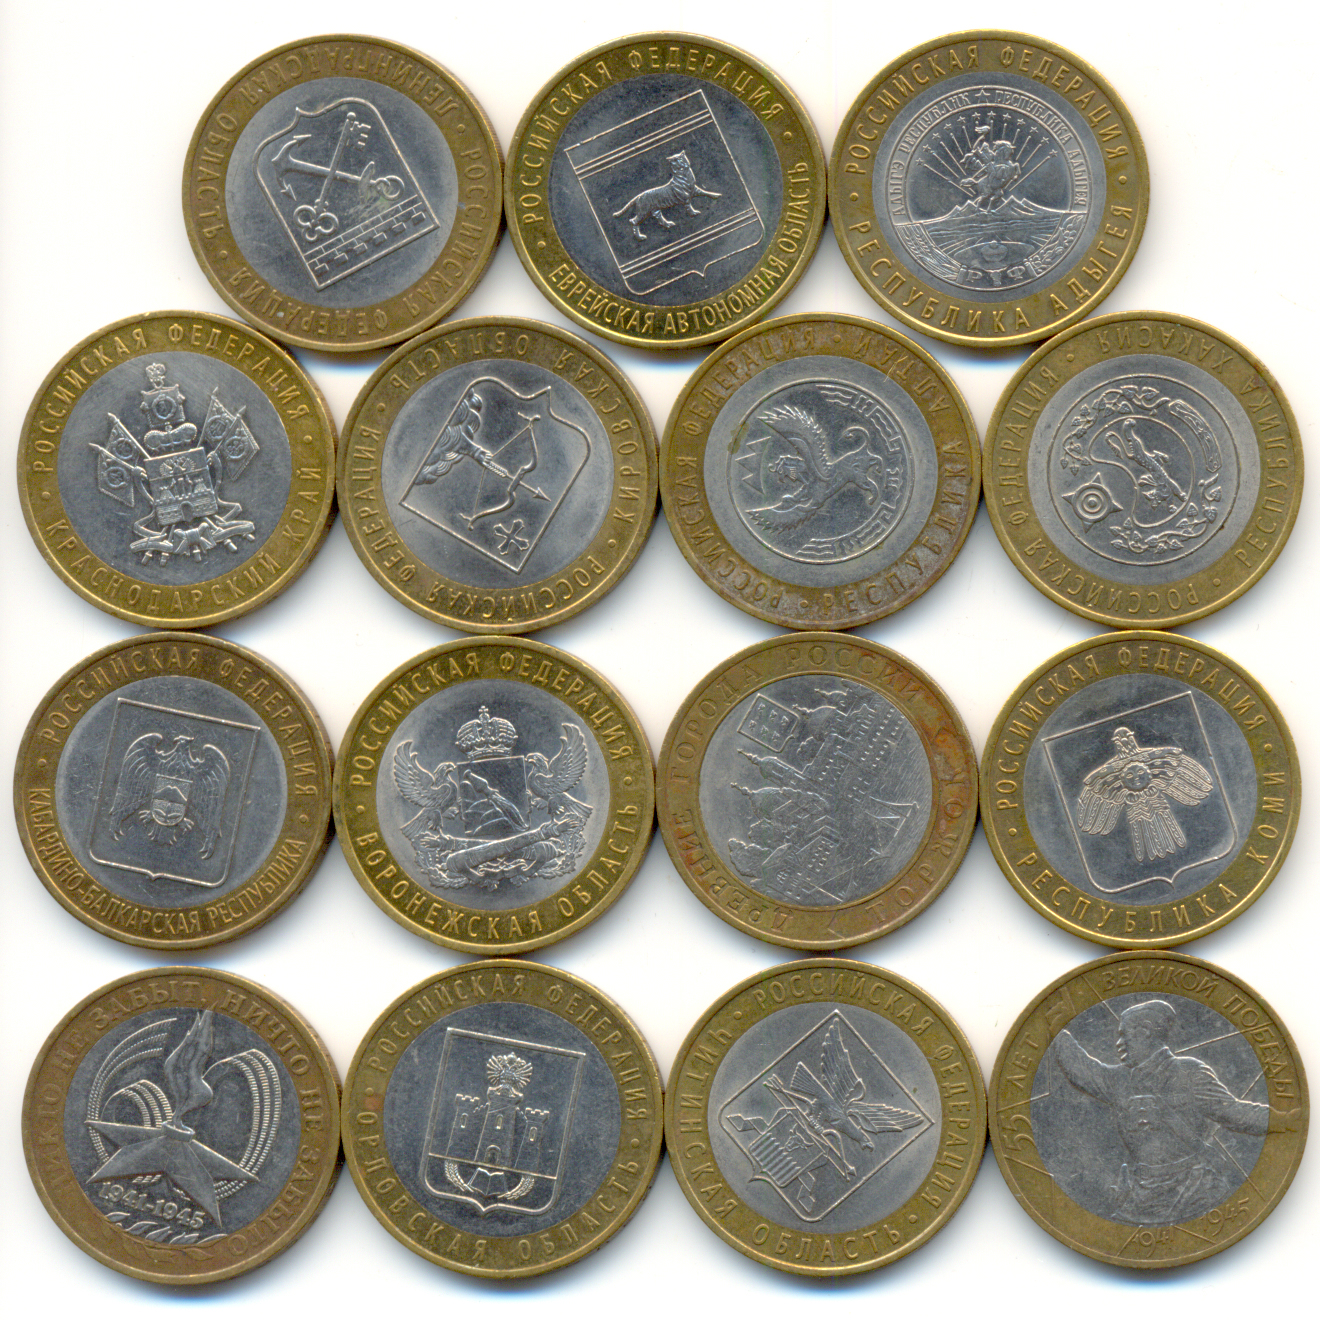 монеты дорогие рубли фото